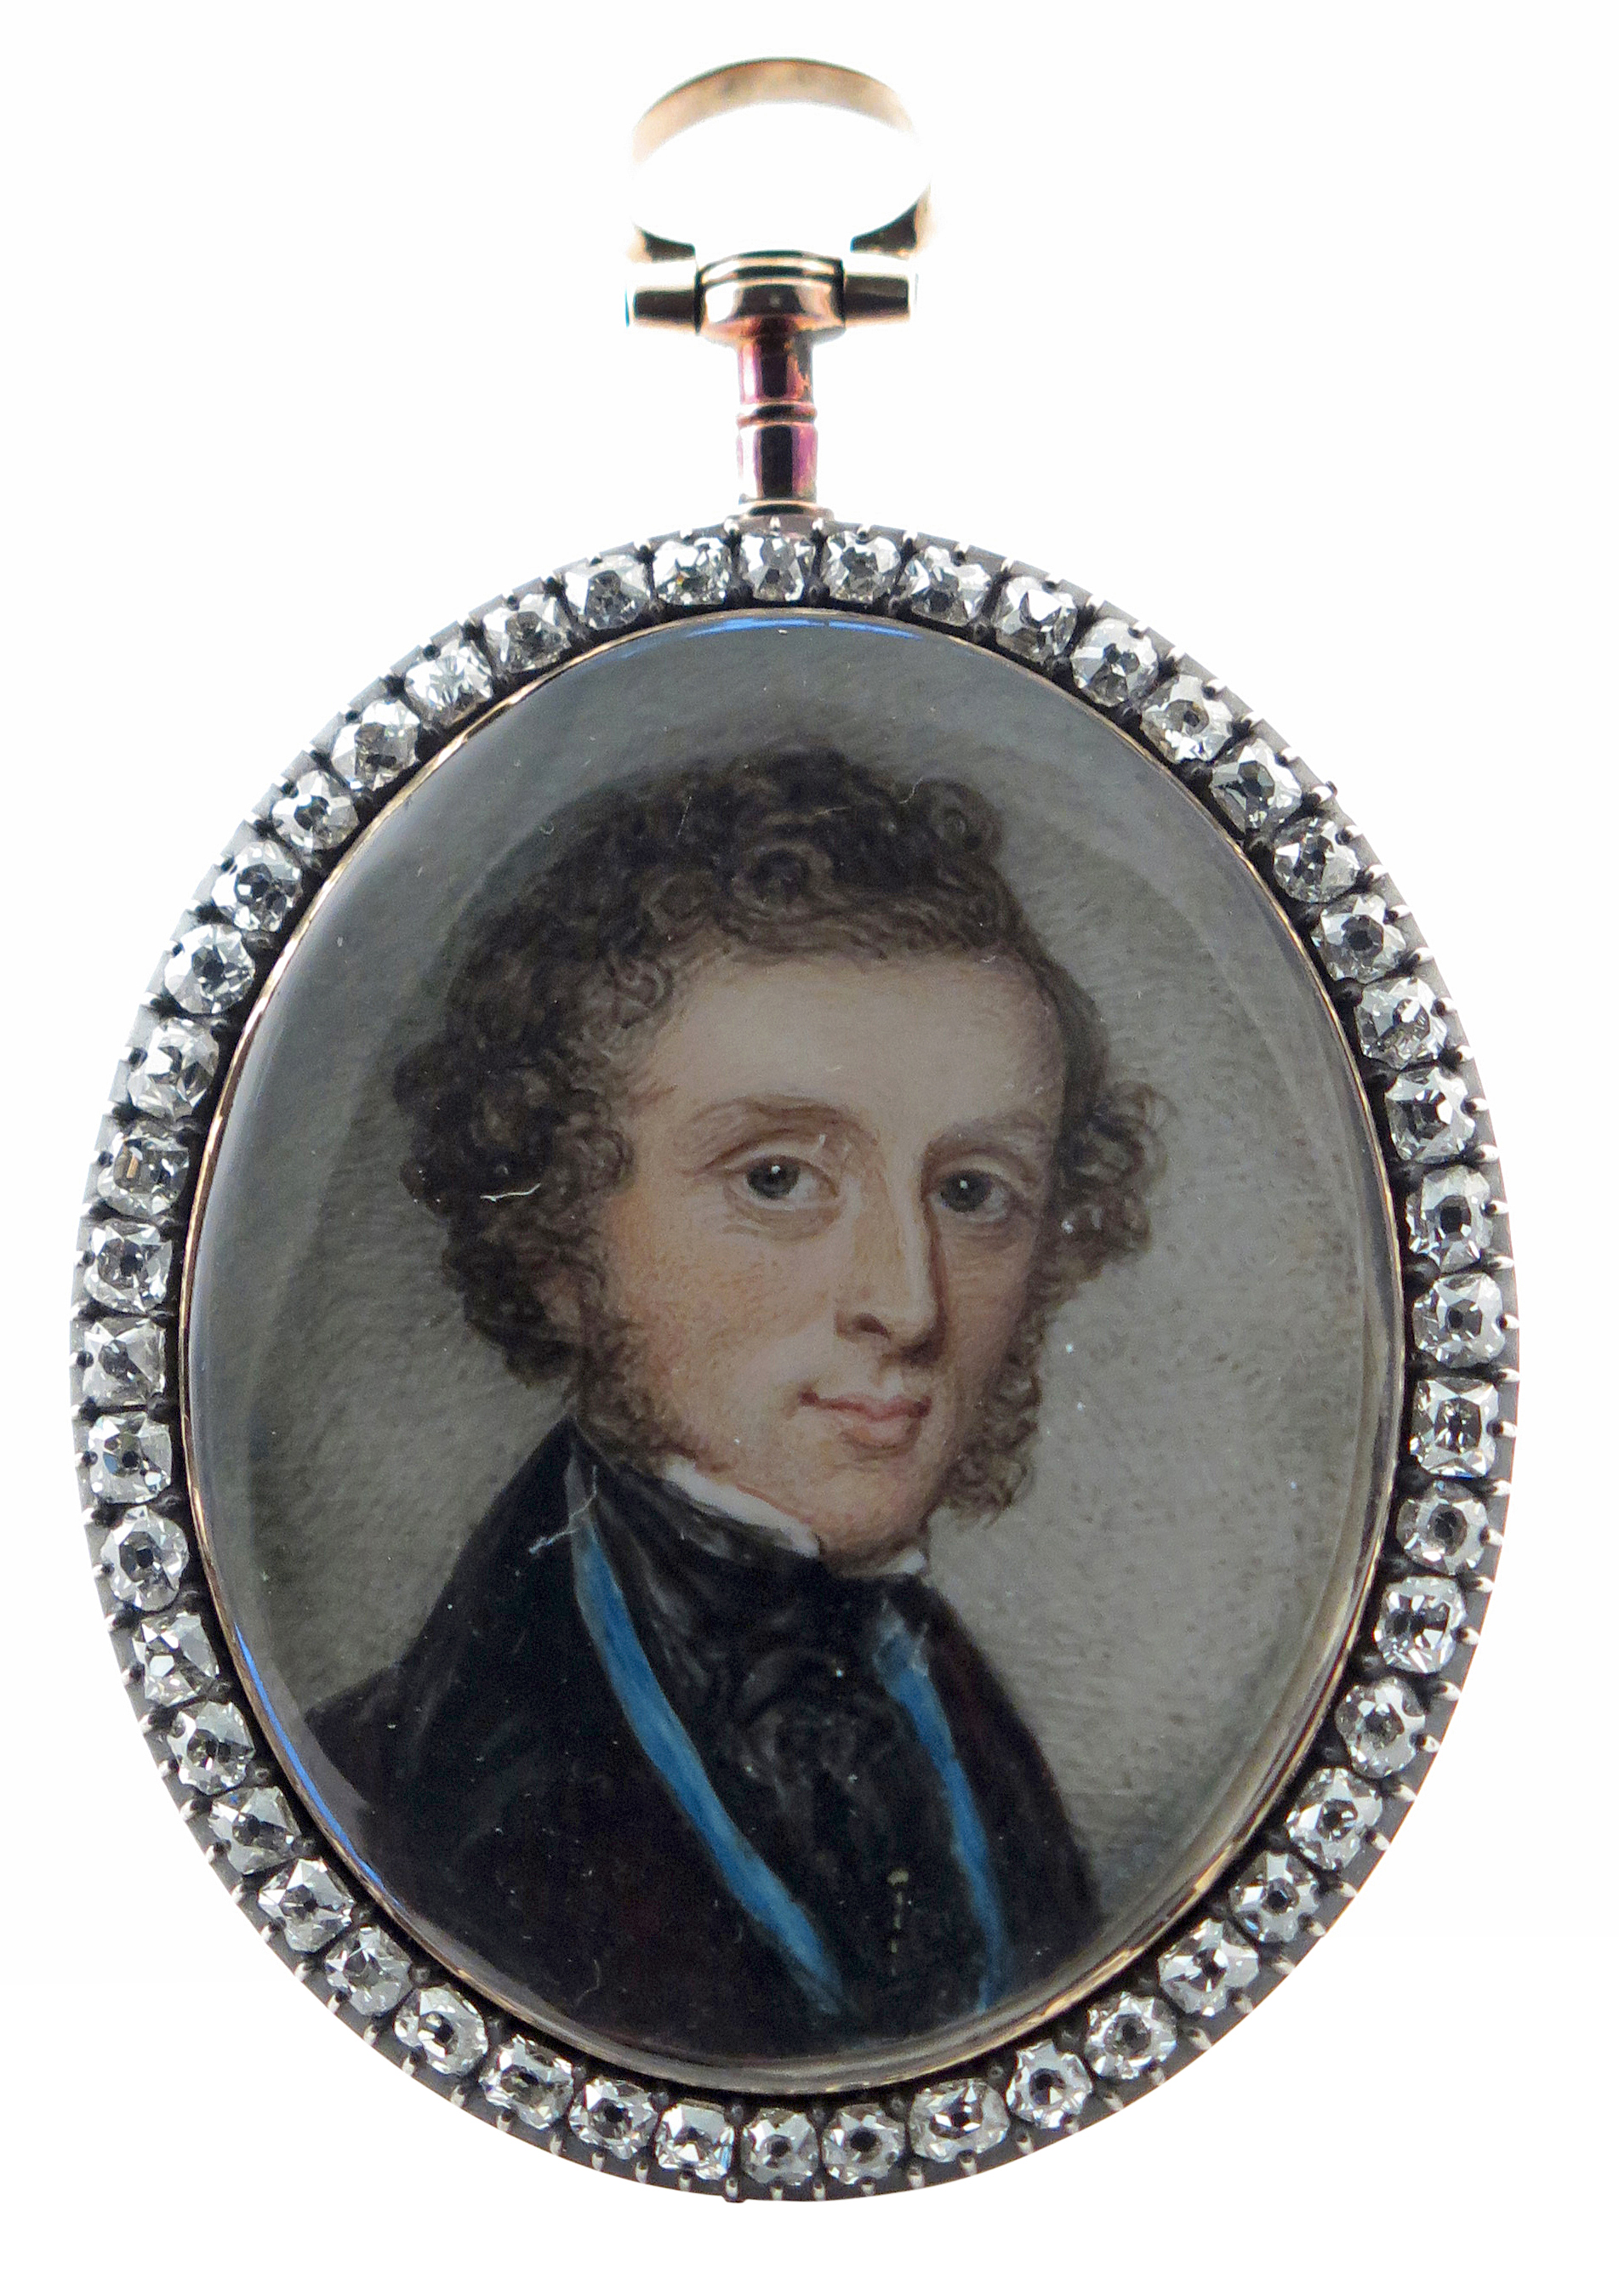 λ Irish School c.1790 Portrait miniature of a gentleman, bust length, wearing a dark coat